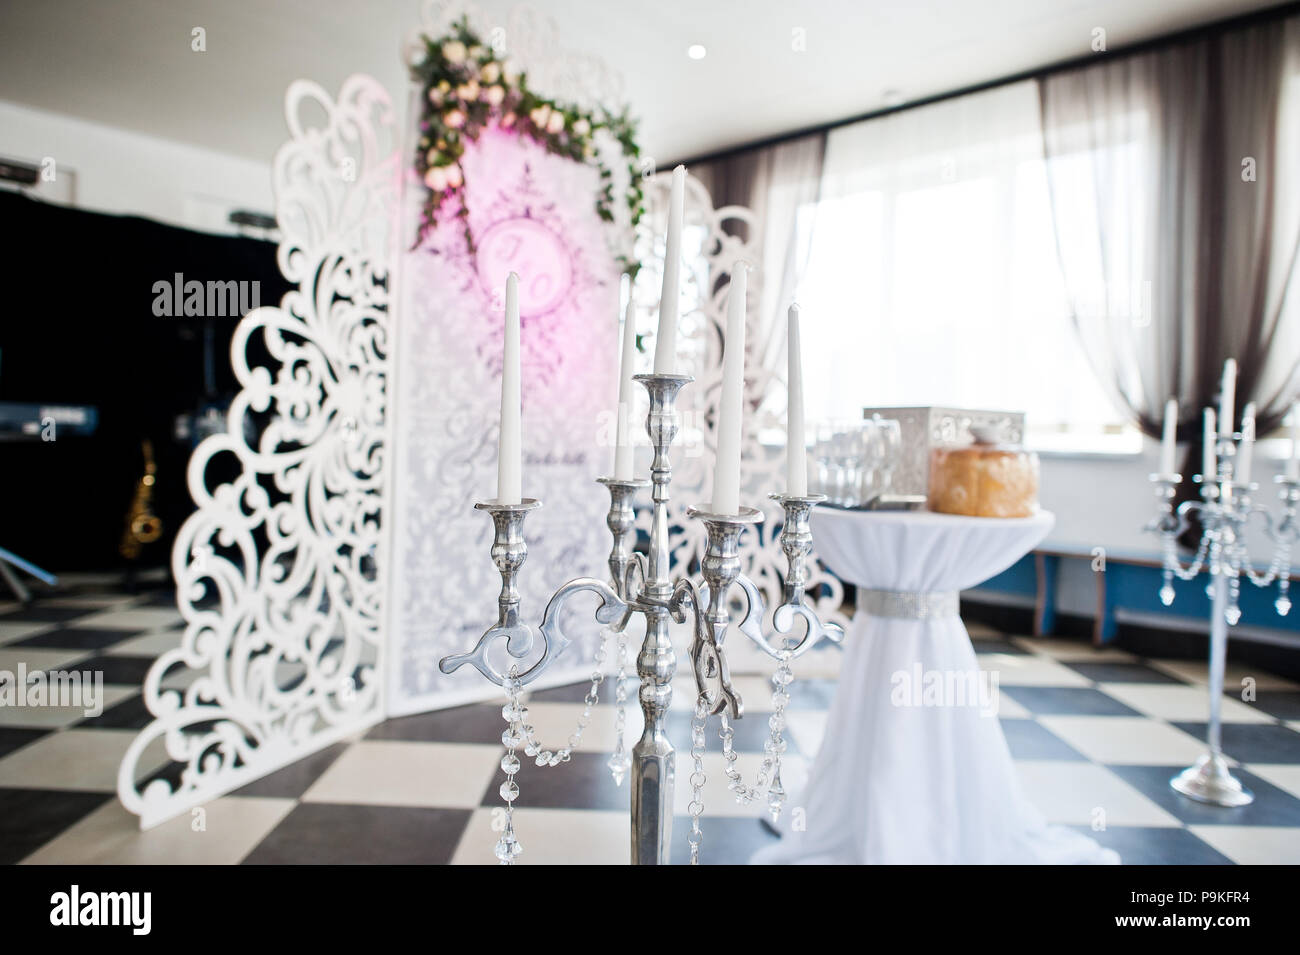 Besonderes Foto Zone mit kleinen hölzernen Wand mit Blumen und die Hochzeit paar Initialen verziert. Tabelle mit Box und Brot. Stockfoto